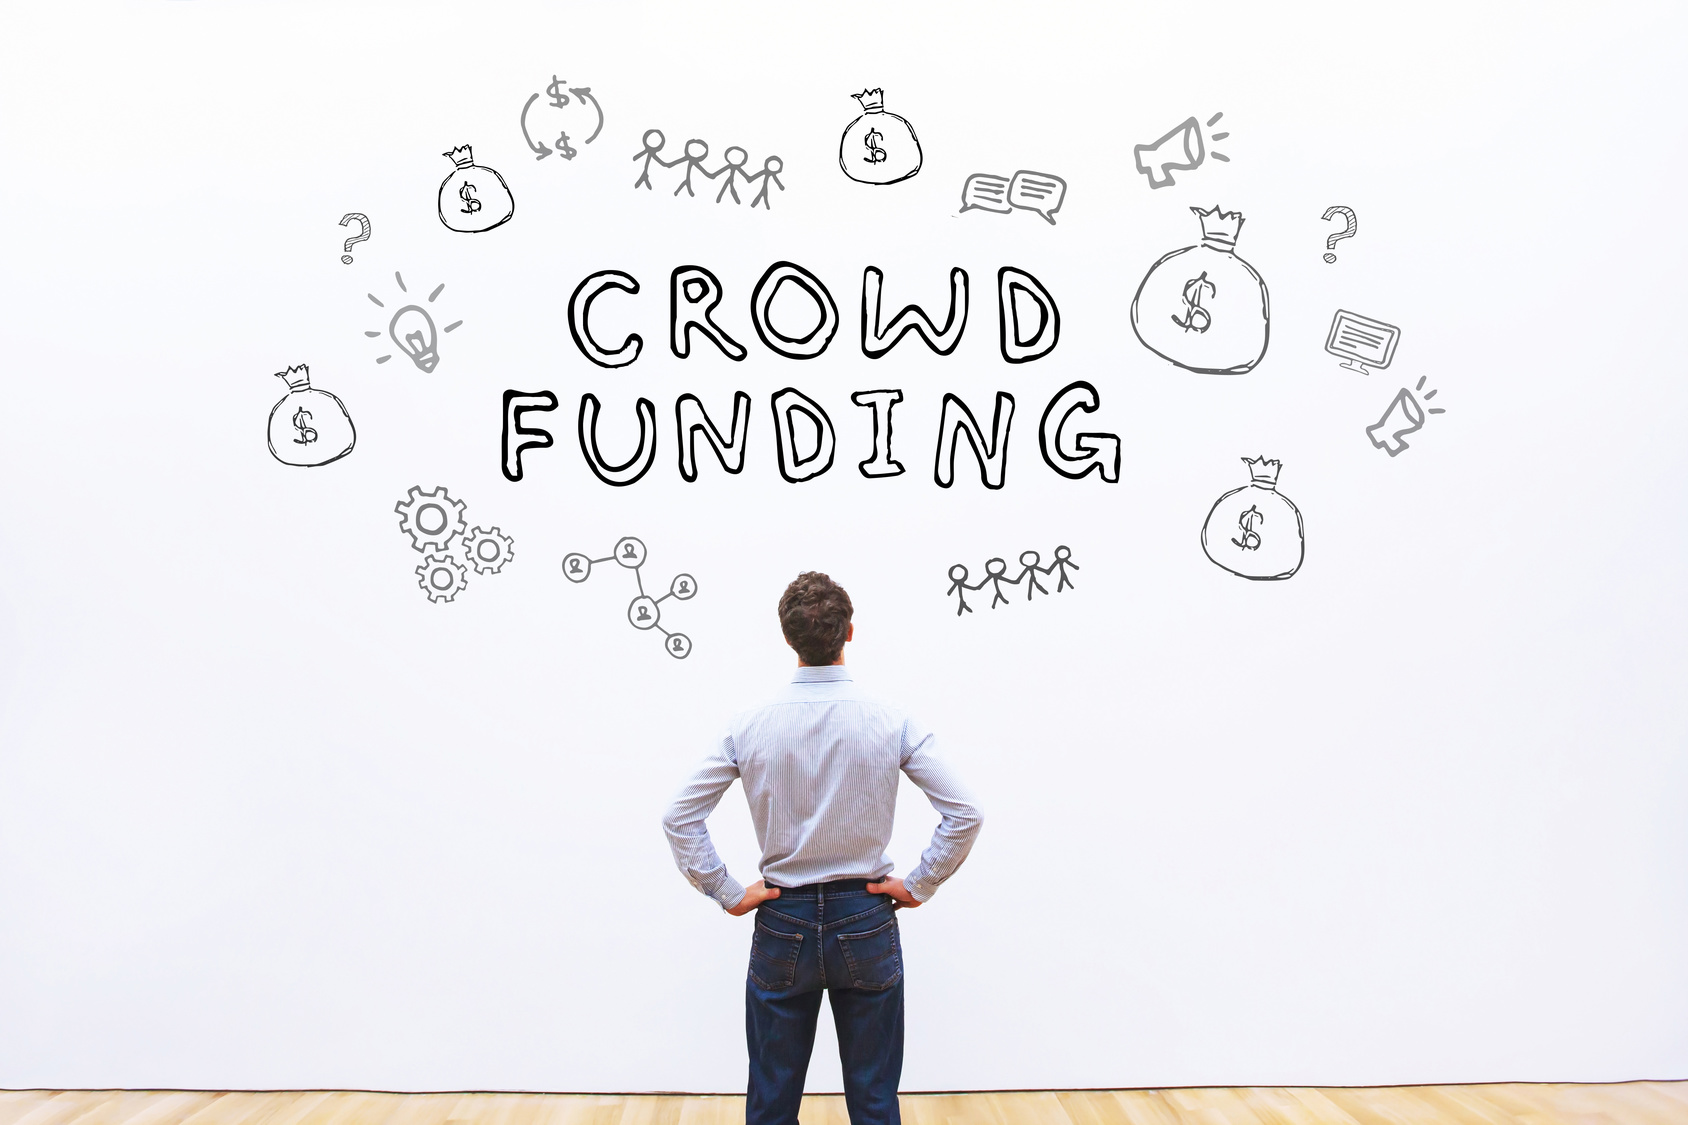 Financement de projets: le patronat accueille le crowdfunding à bras ouverts